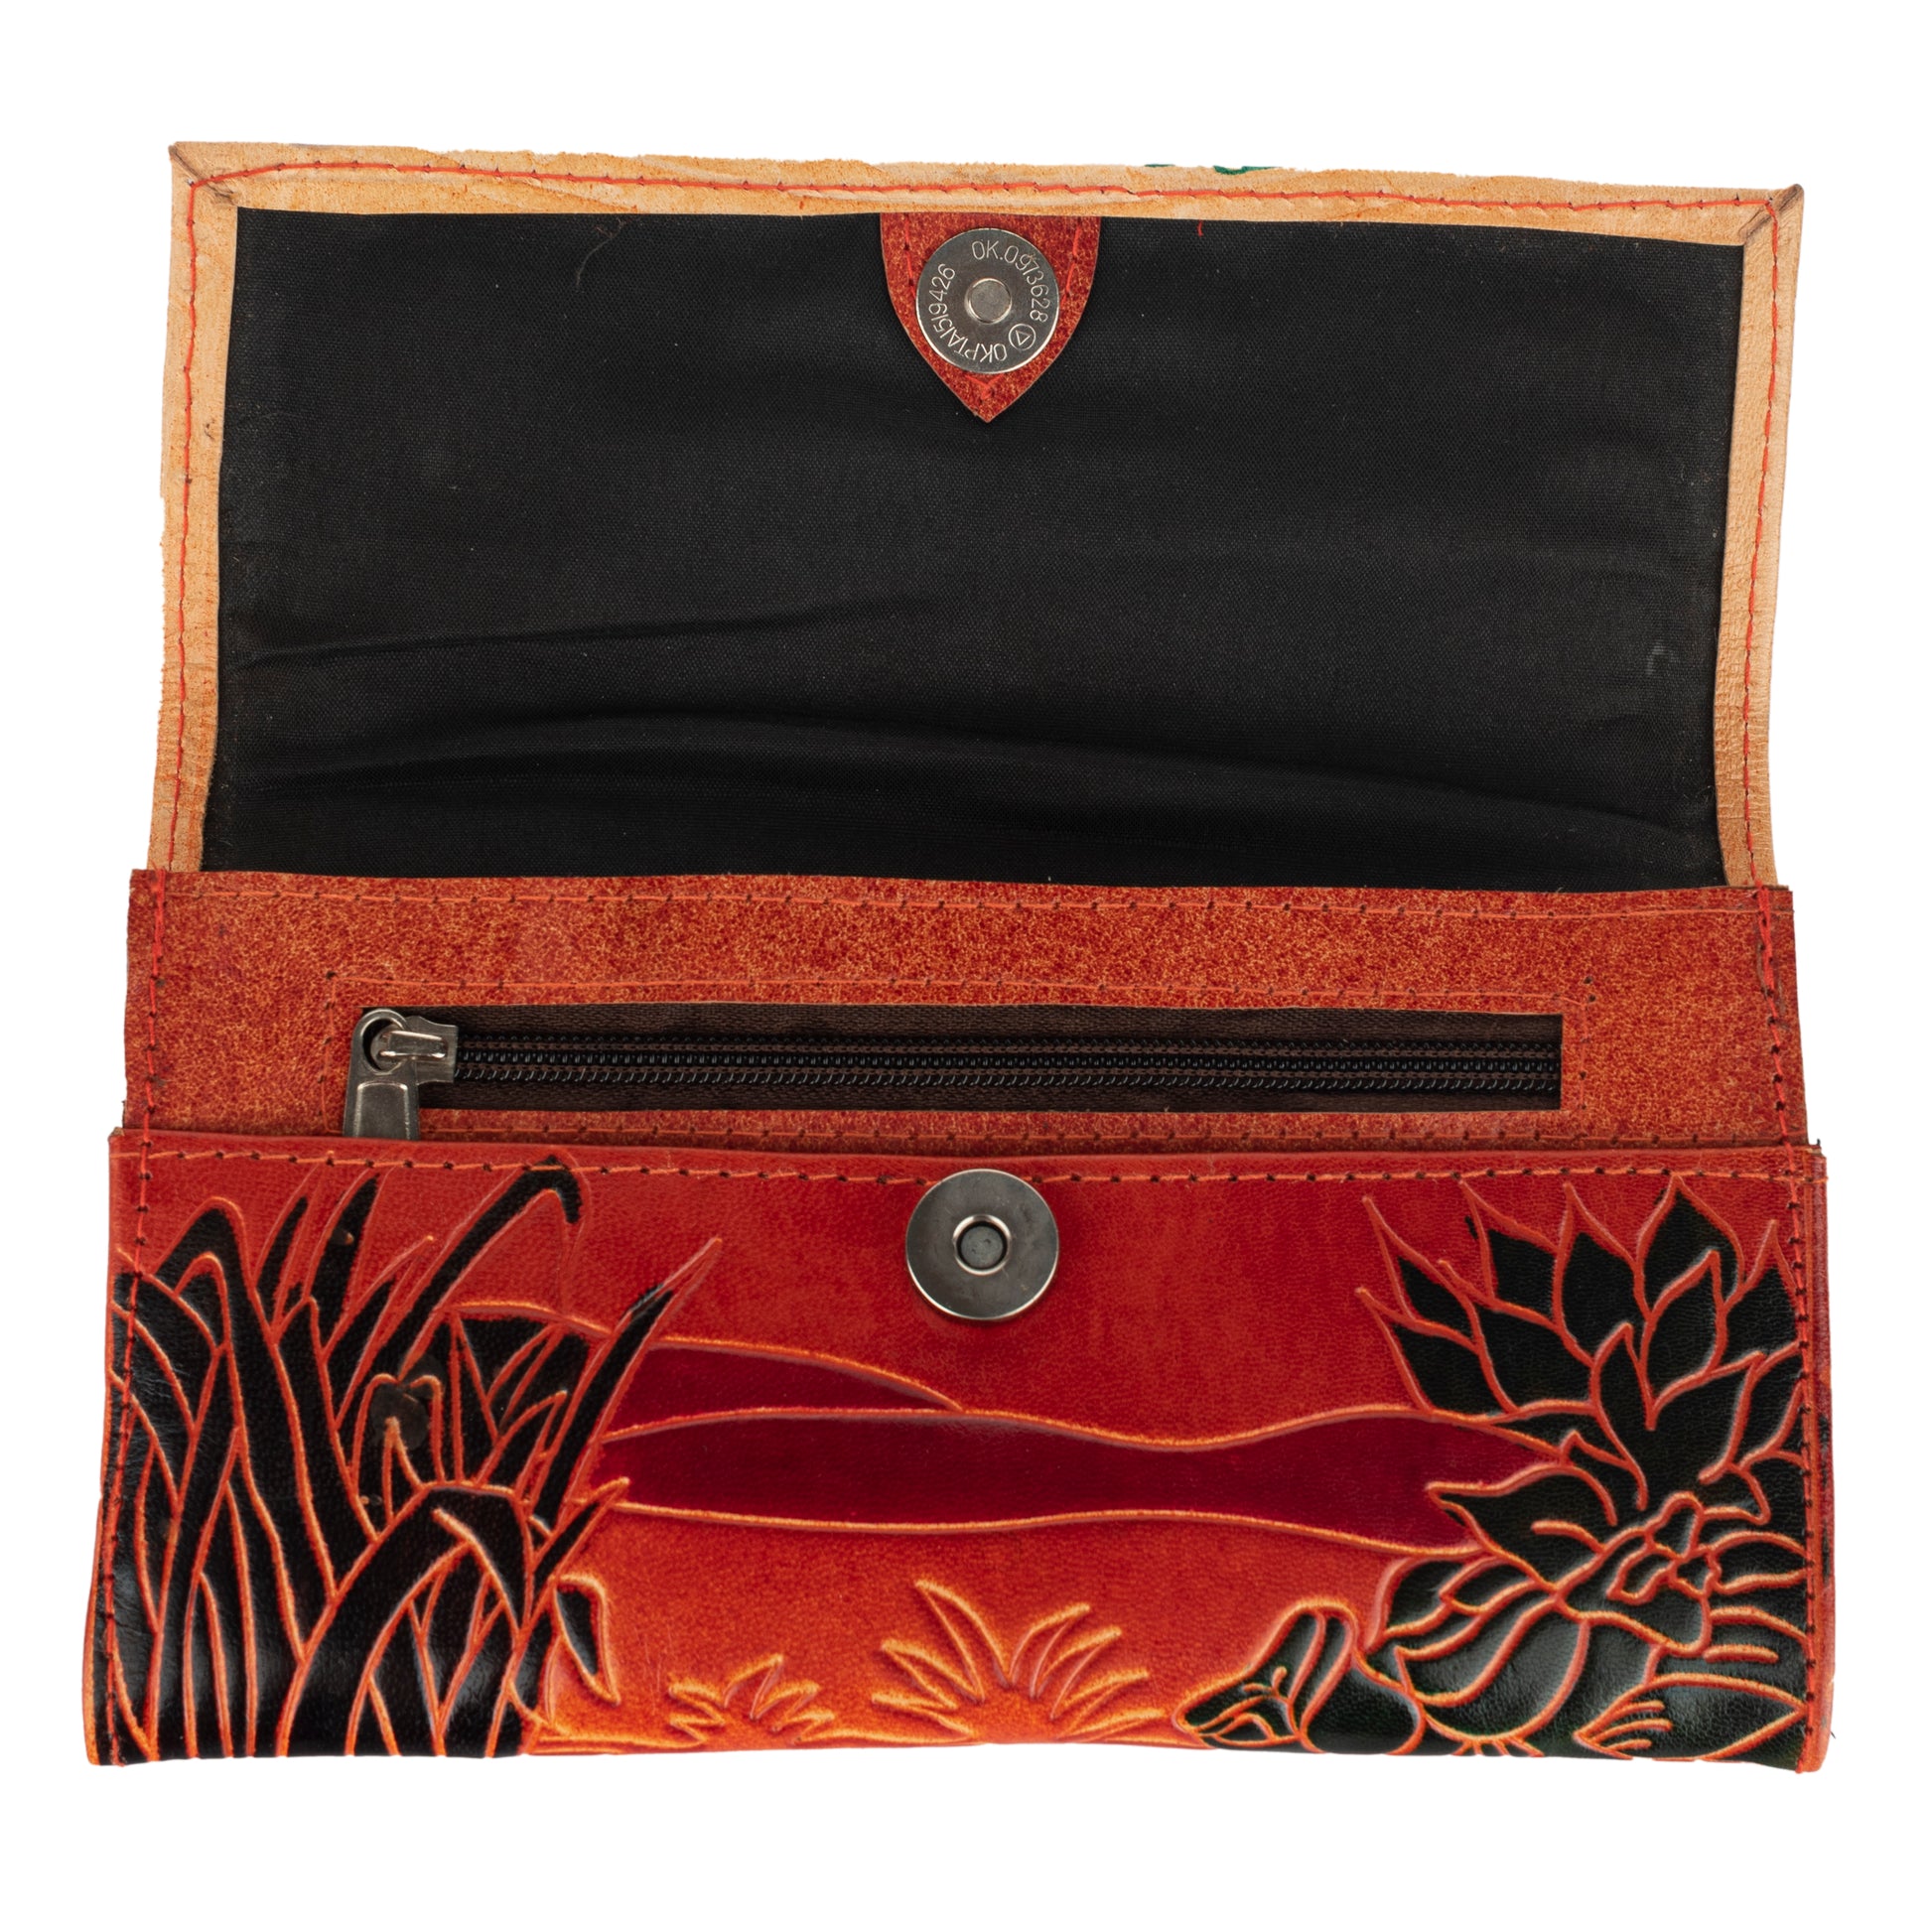 shantiniketan-leather-small-clutch-handbag-6-3-5-w14